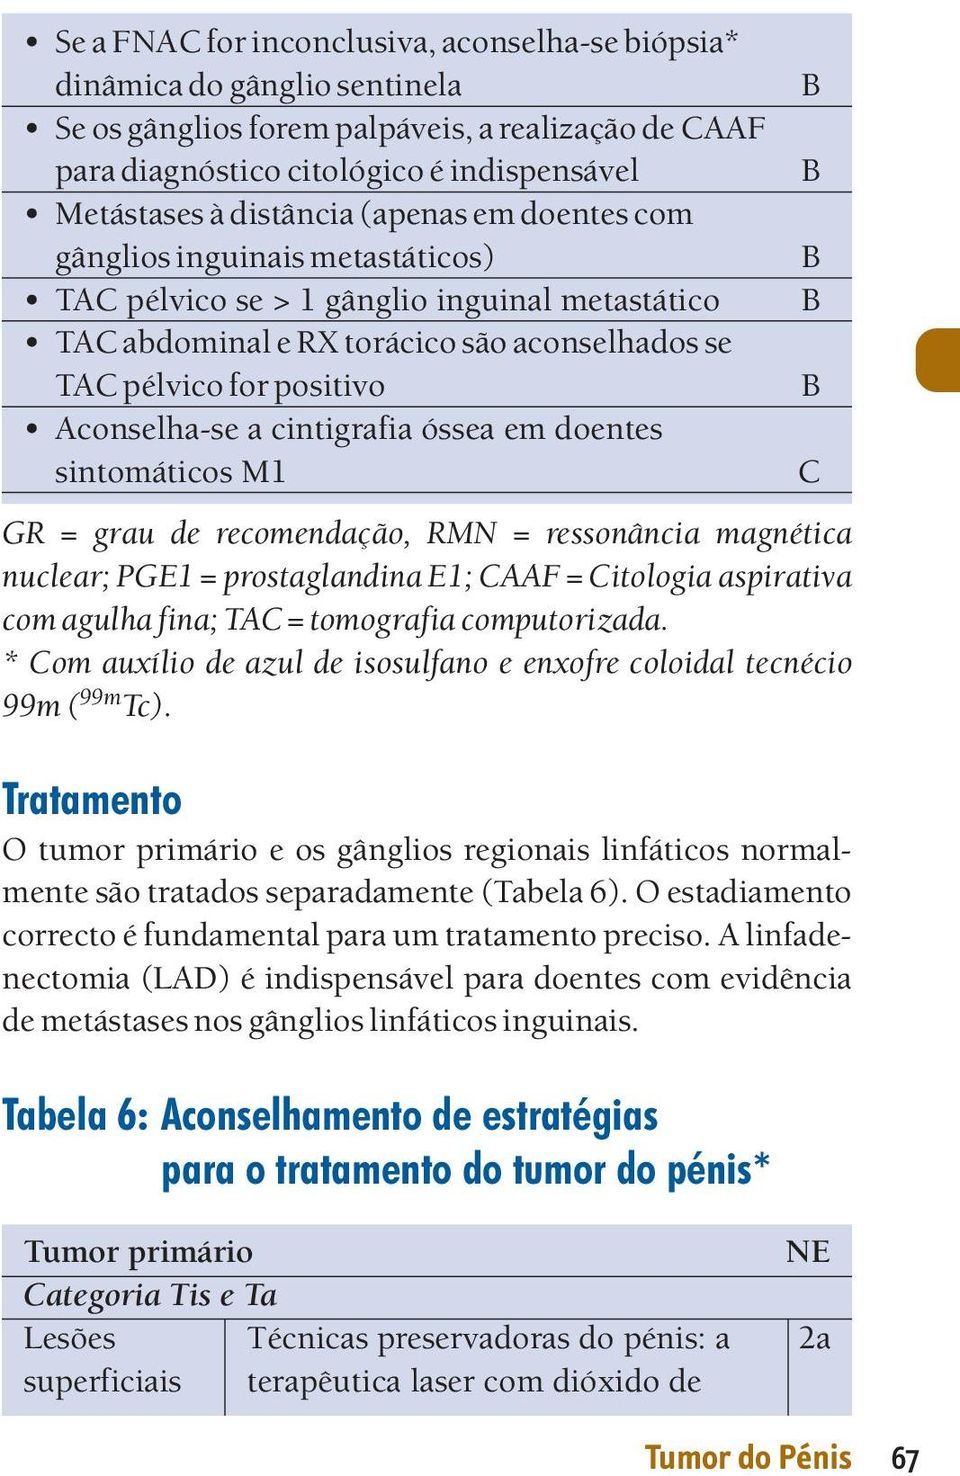 cintigrafia óssea em doentes sintomáticos M1 GR = grau de recomendação, RMN = ressonância magnética nuclear; PGE1 = prostaglandina E1; CAAF = Citologia aspirativa com agulha fina; TAC = tomografia